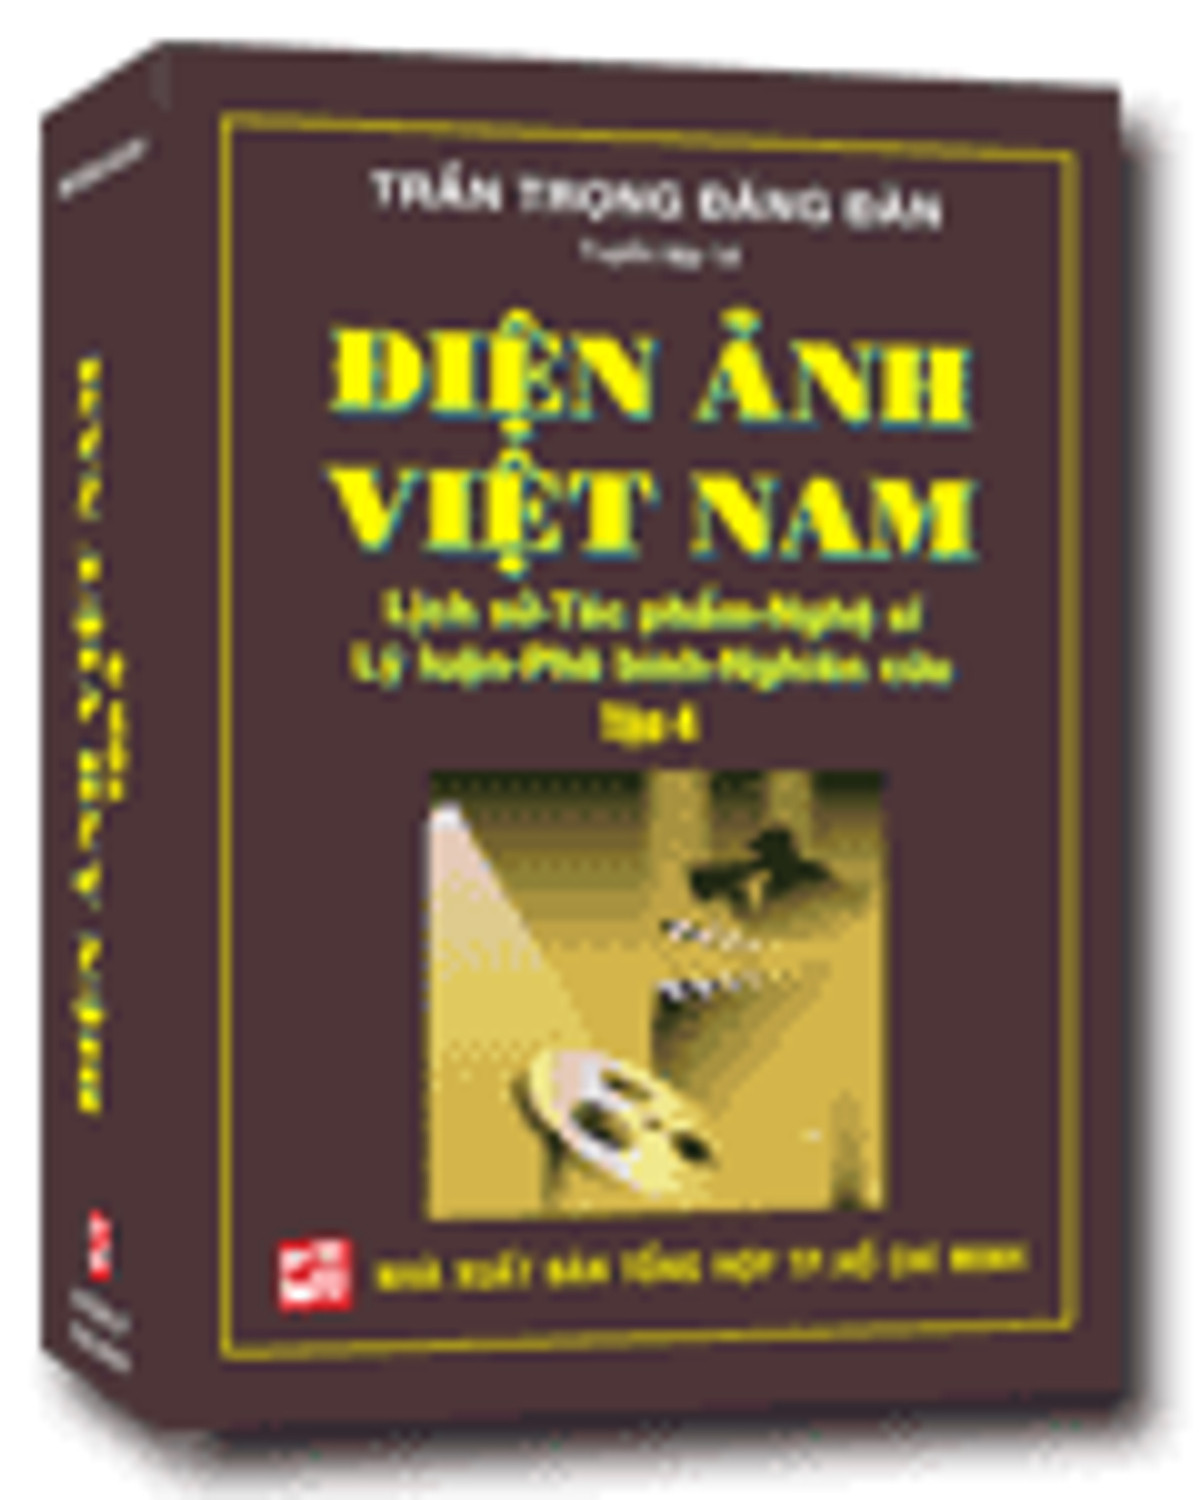 Điện Ảnh Việt Nam: Lịch Sử - Tác Phẩm - Nghệ Sĩ - Lý Luận - Phê Bình - Nghiên Cứu (Tập 4)